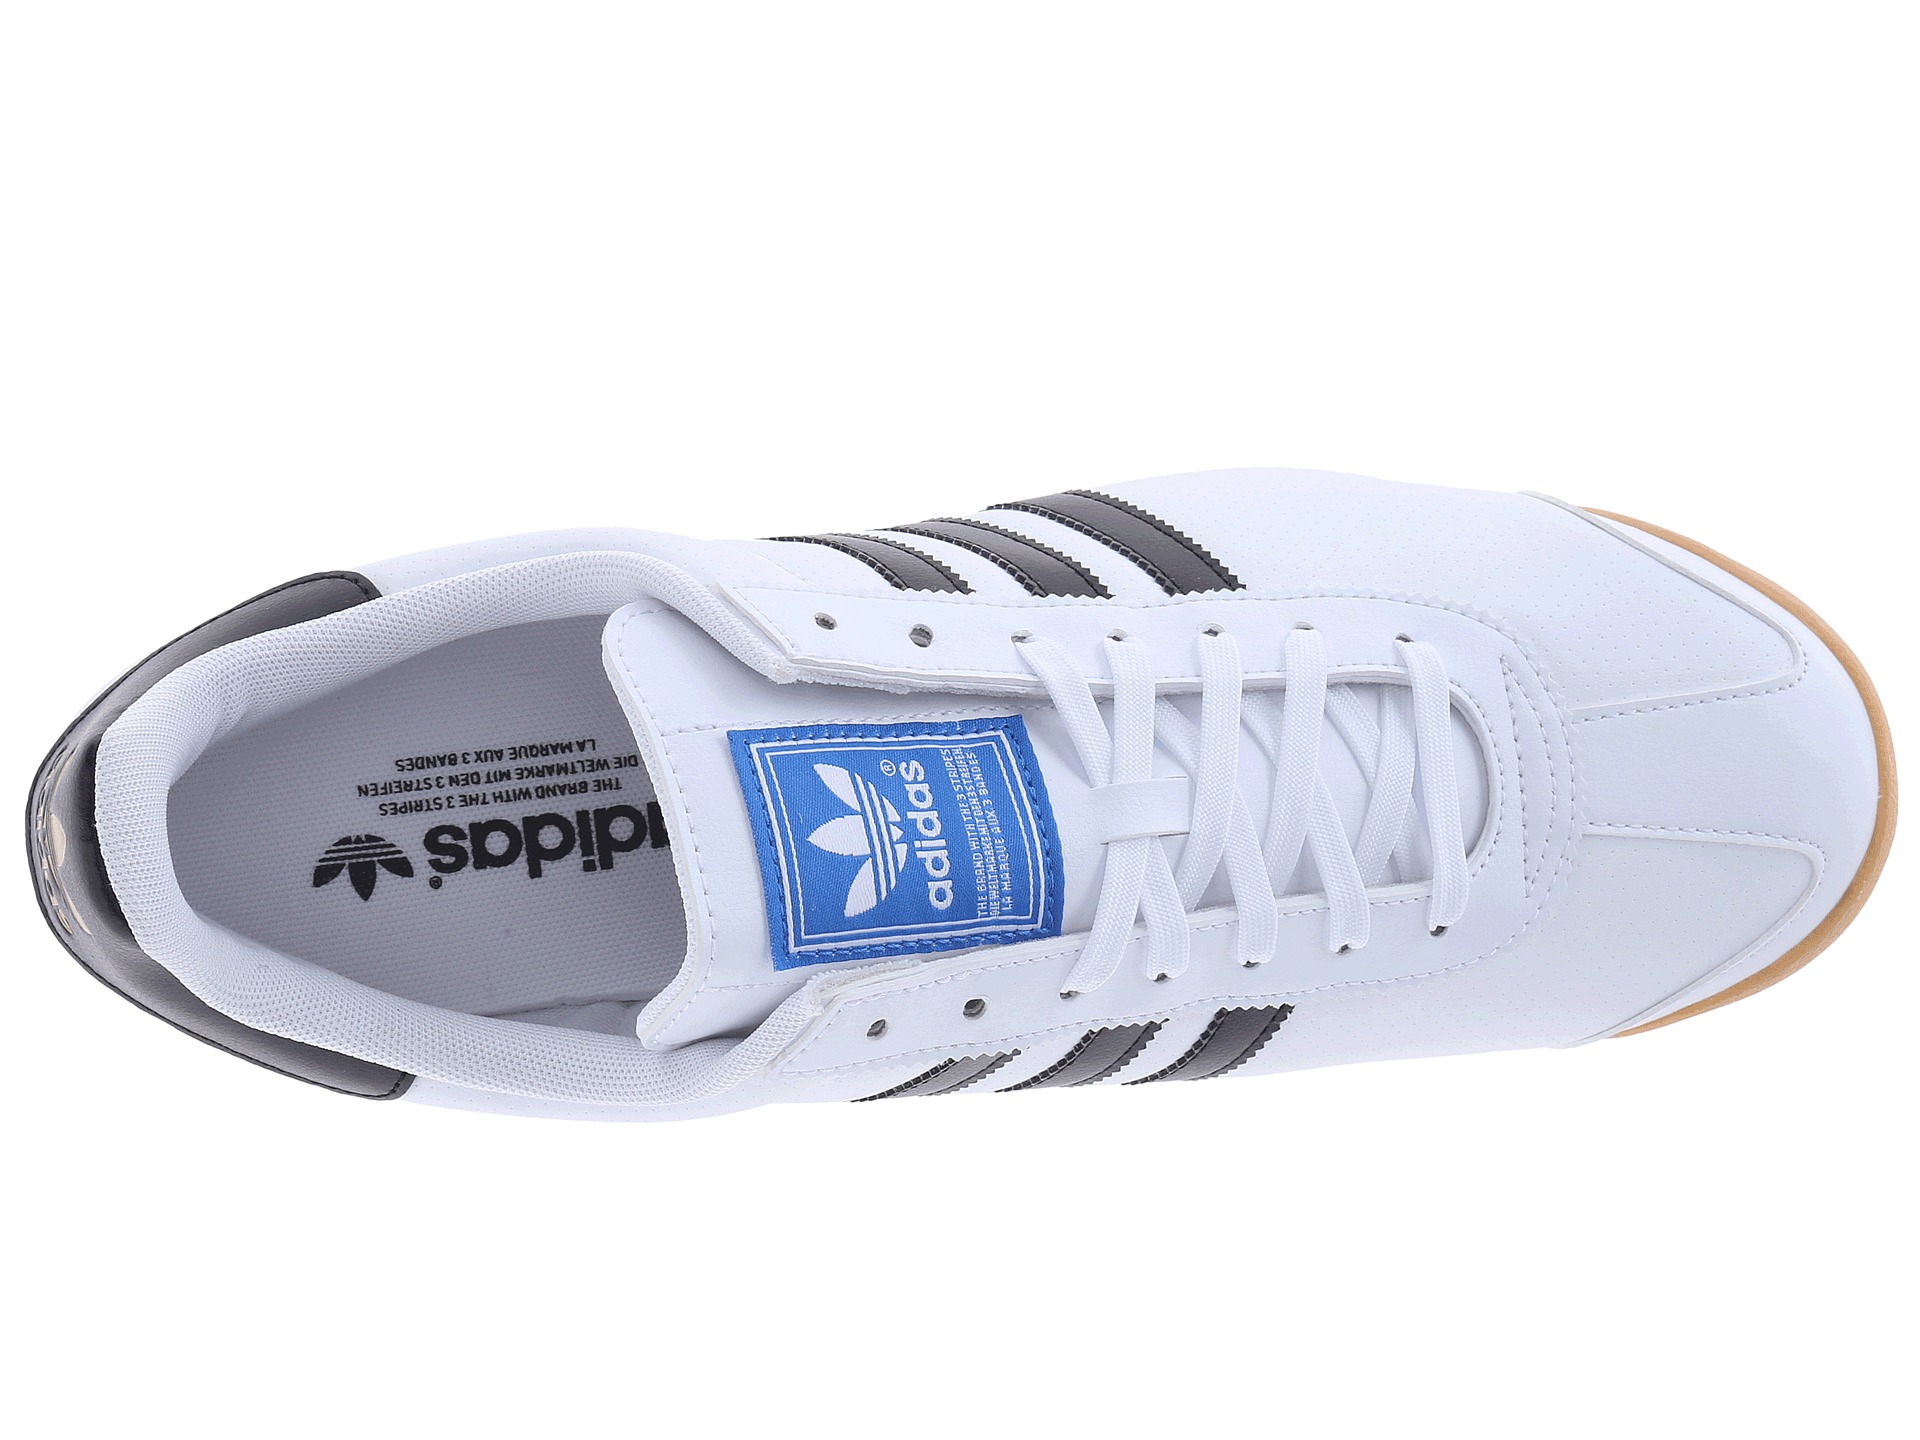 adidas Originals Samoa White/Black/Gum (Perf Gum) - Zappos.com Free ...